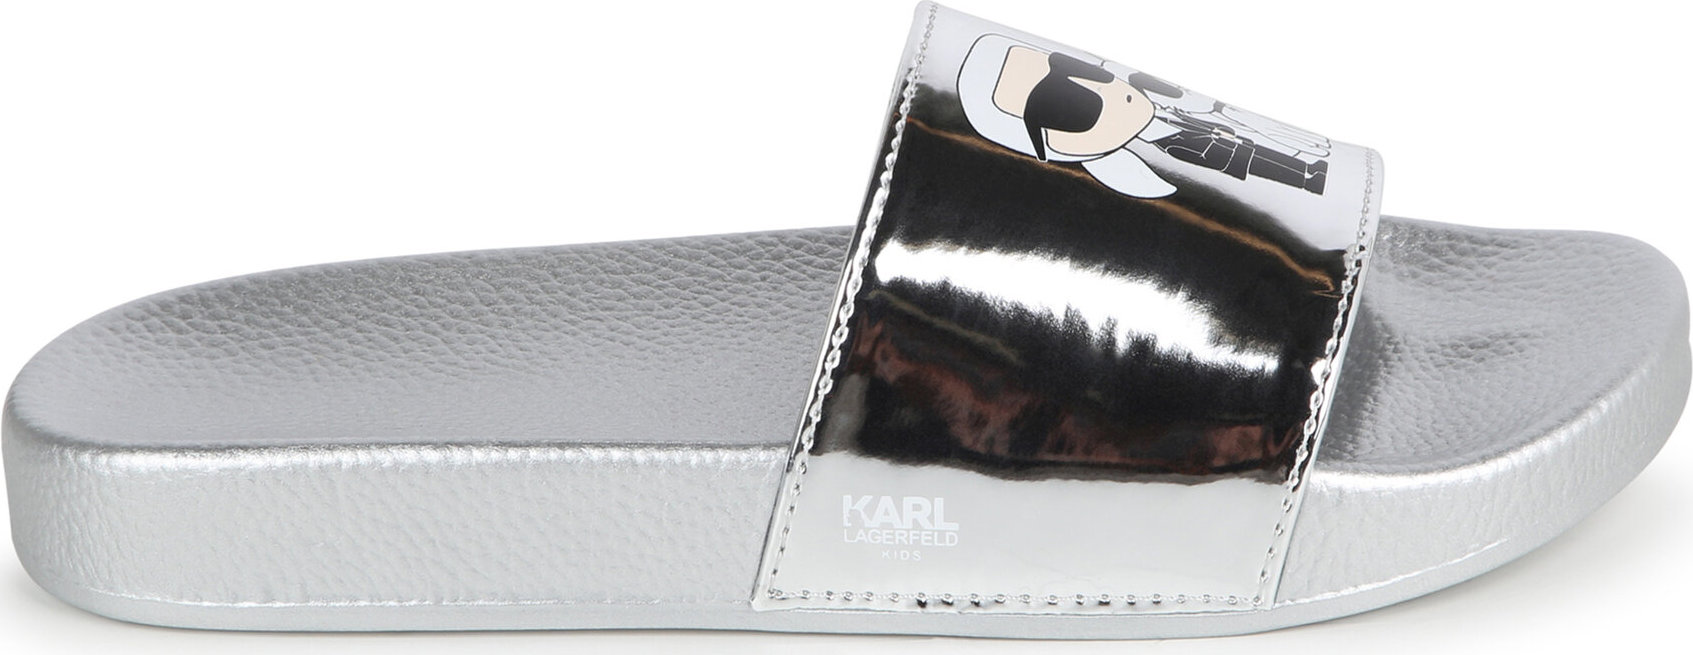 Nazouváky Karl Lagerfeld Kids Z30016 S Light Grey 016